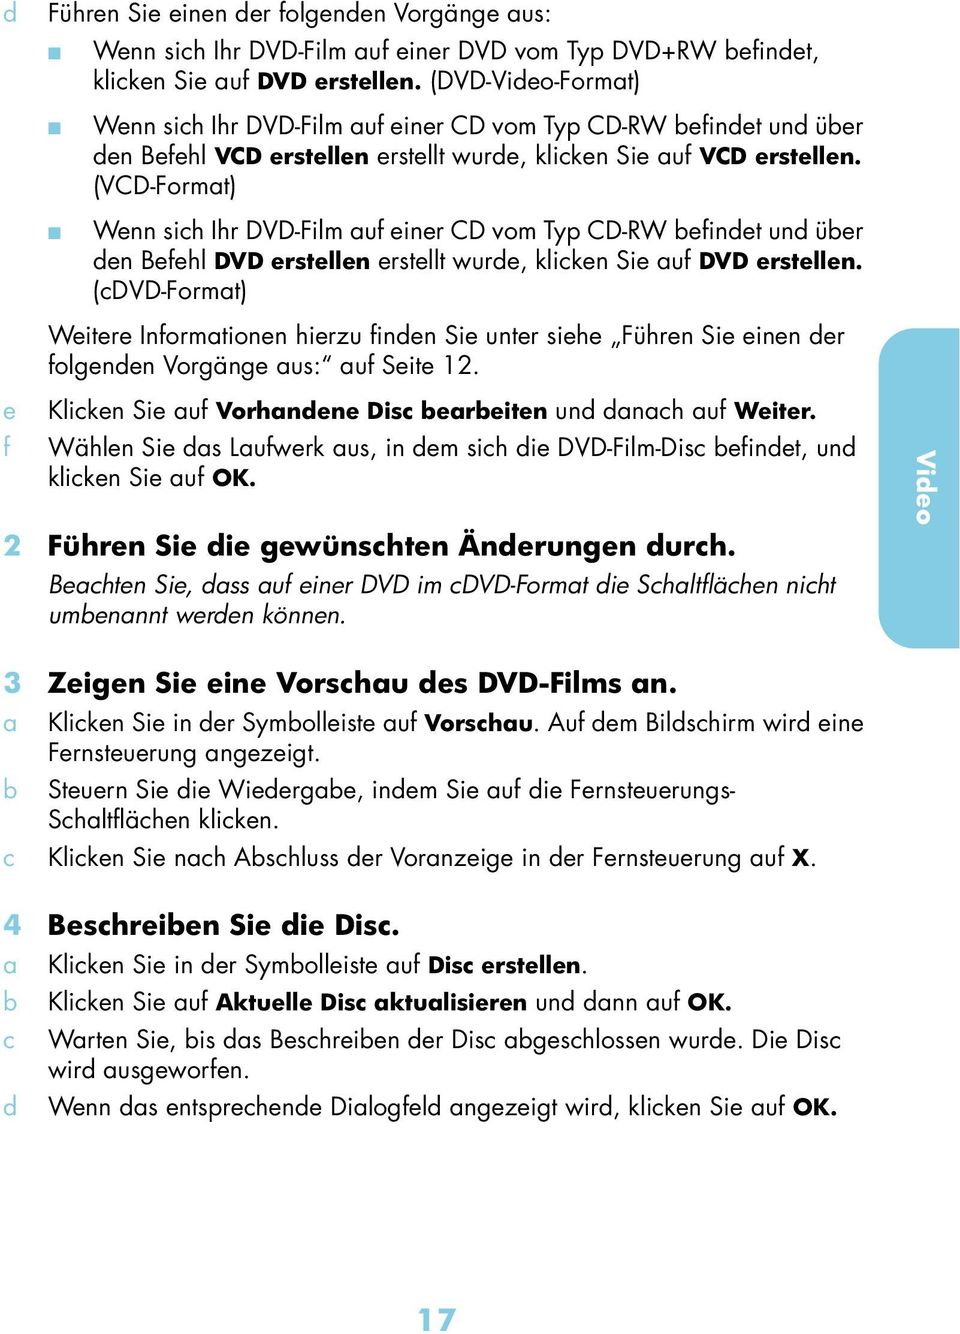 (VCD-Formt) Wenn sich Ihr DVD-Film uf einer CD vom Typ CD-RW efindet und üer den Befehl DVD erstellen erstellt wurde, klicken Sie uf DVD erstellen.